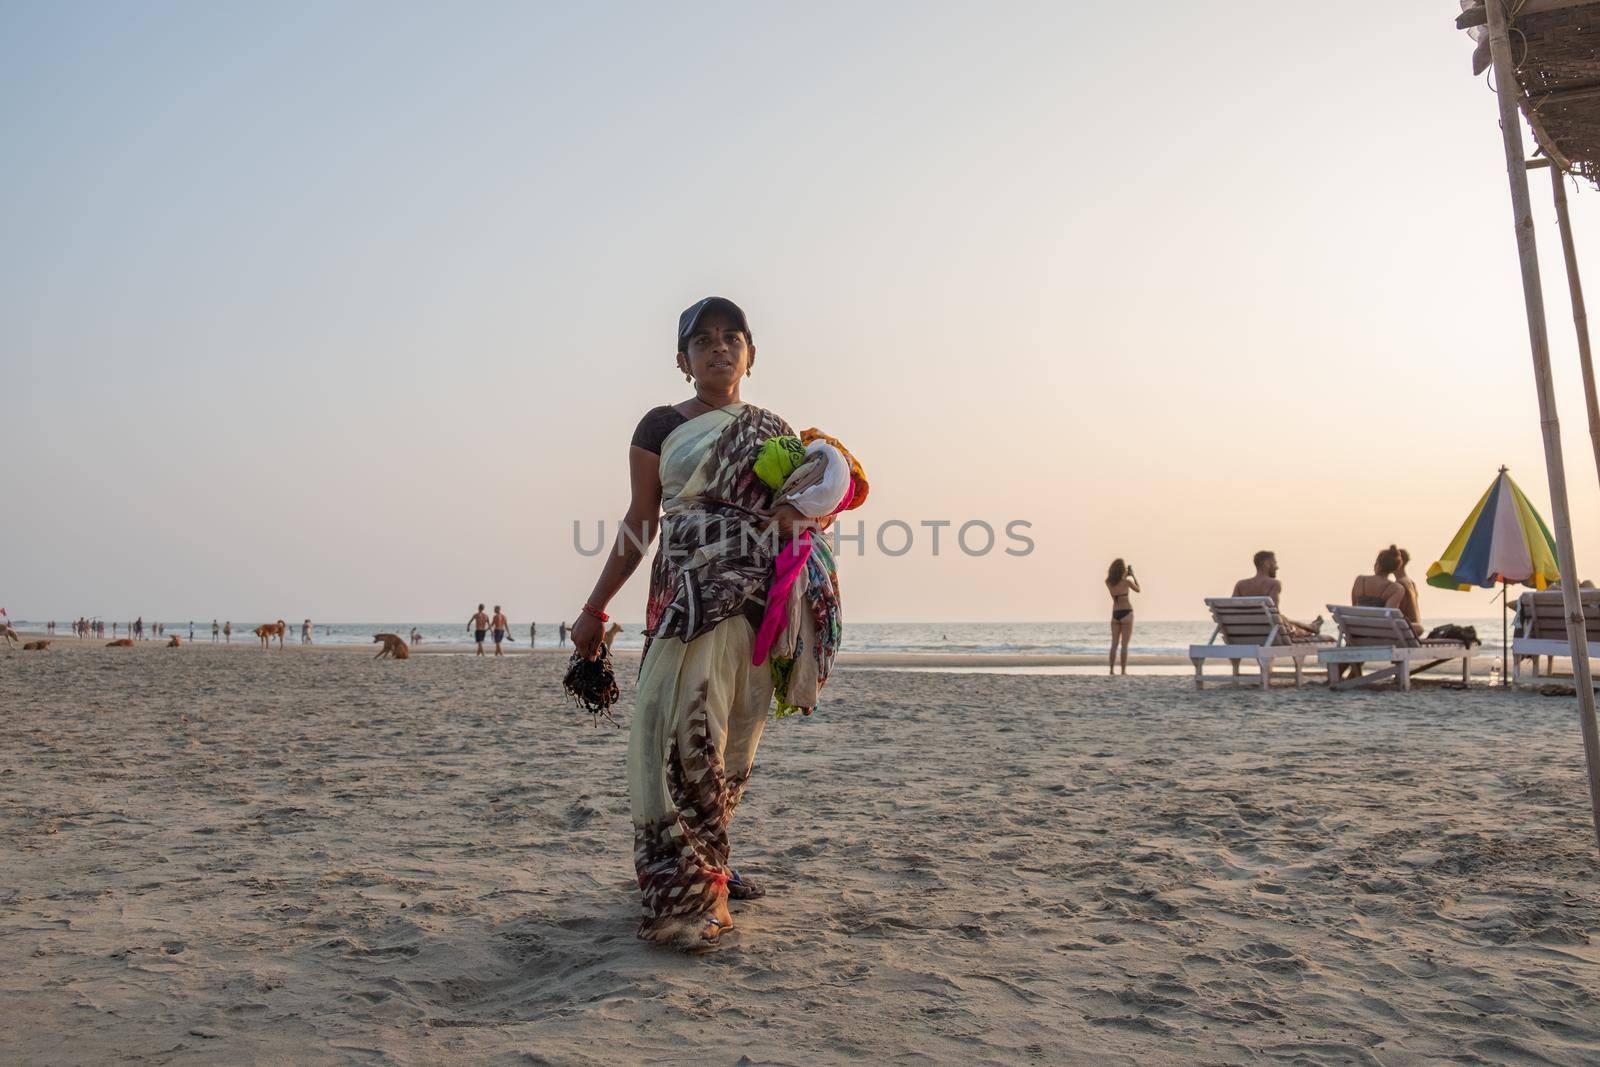 Indian woman souvenir seller on the beach, Goa, India